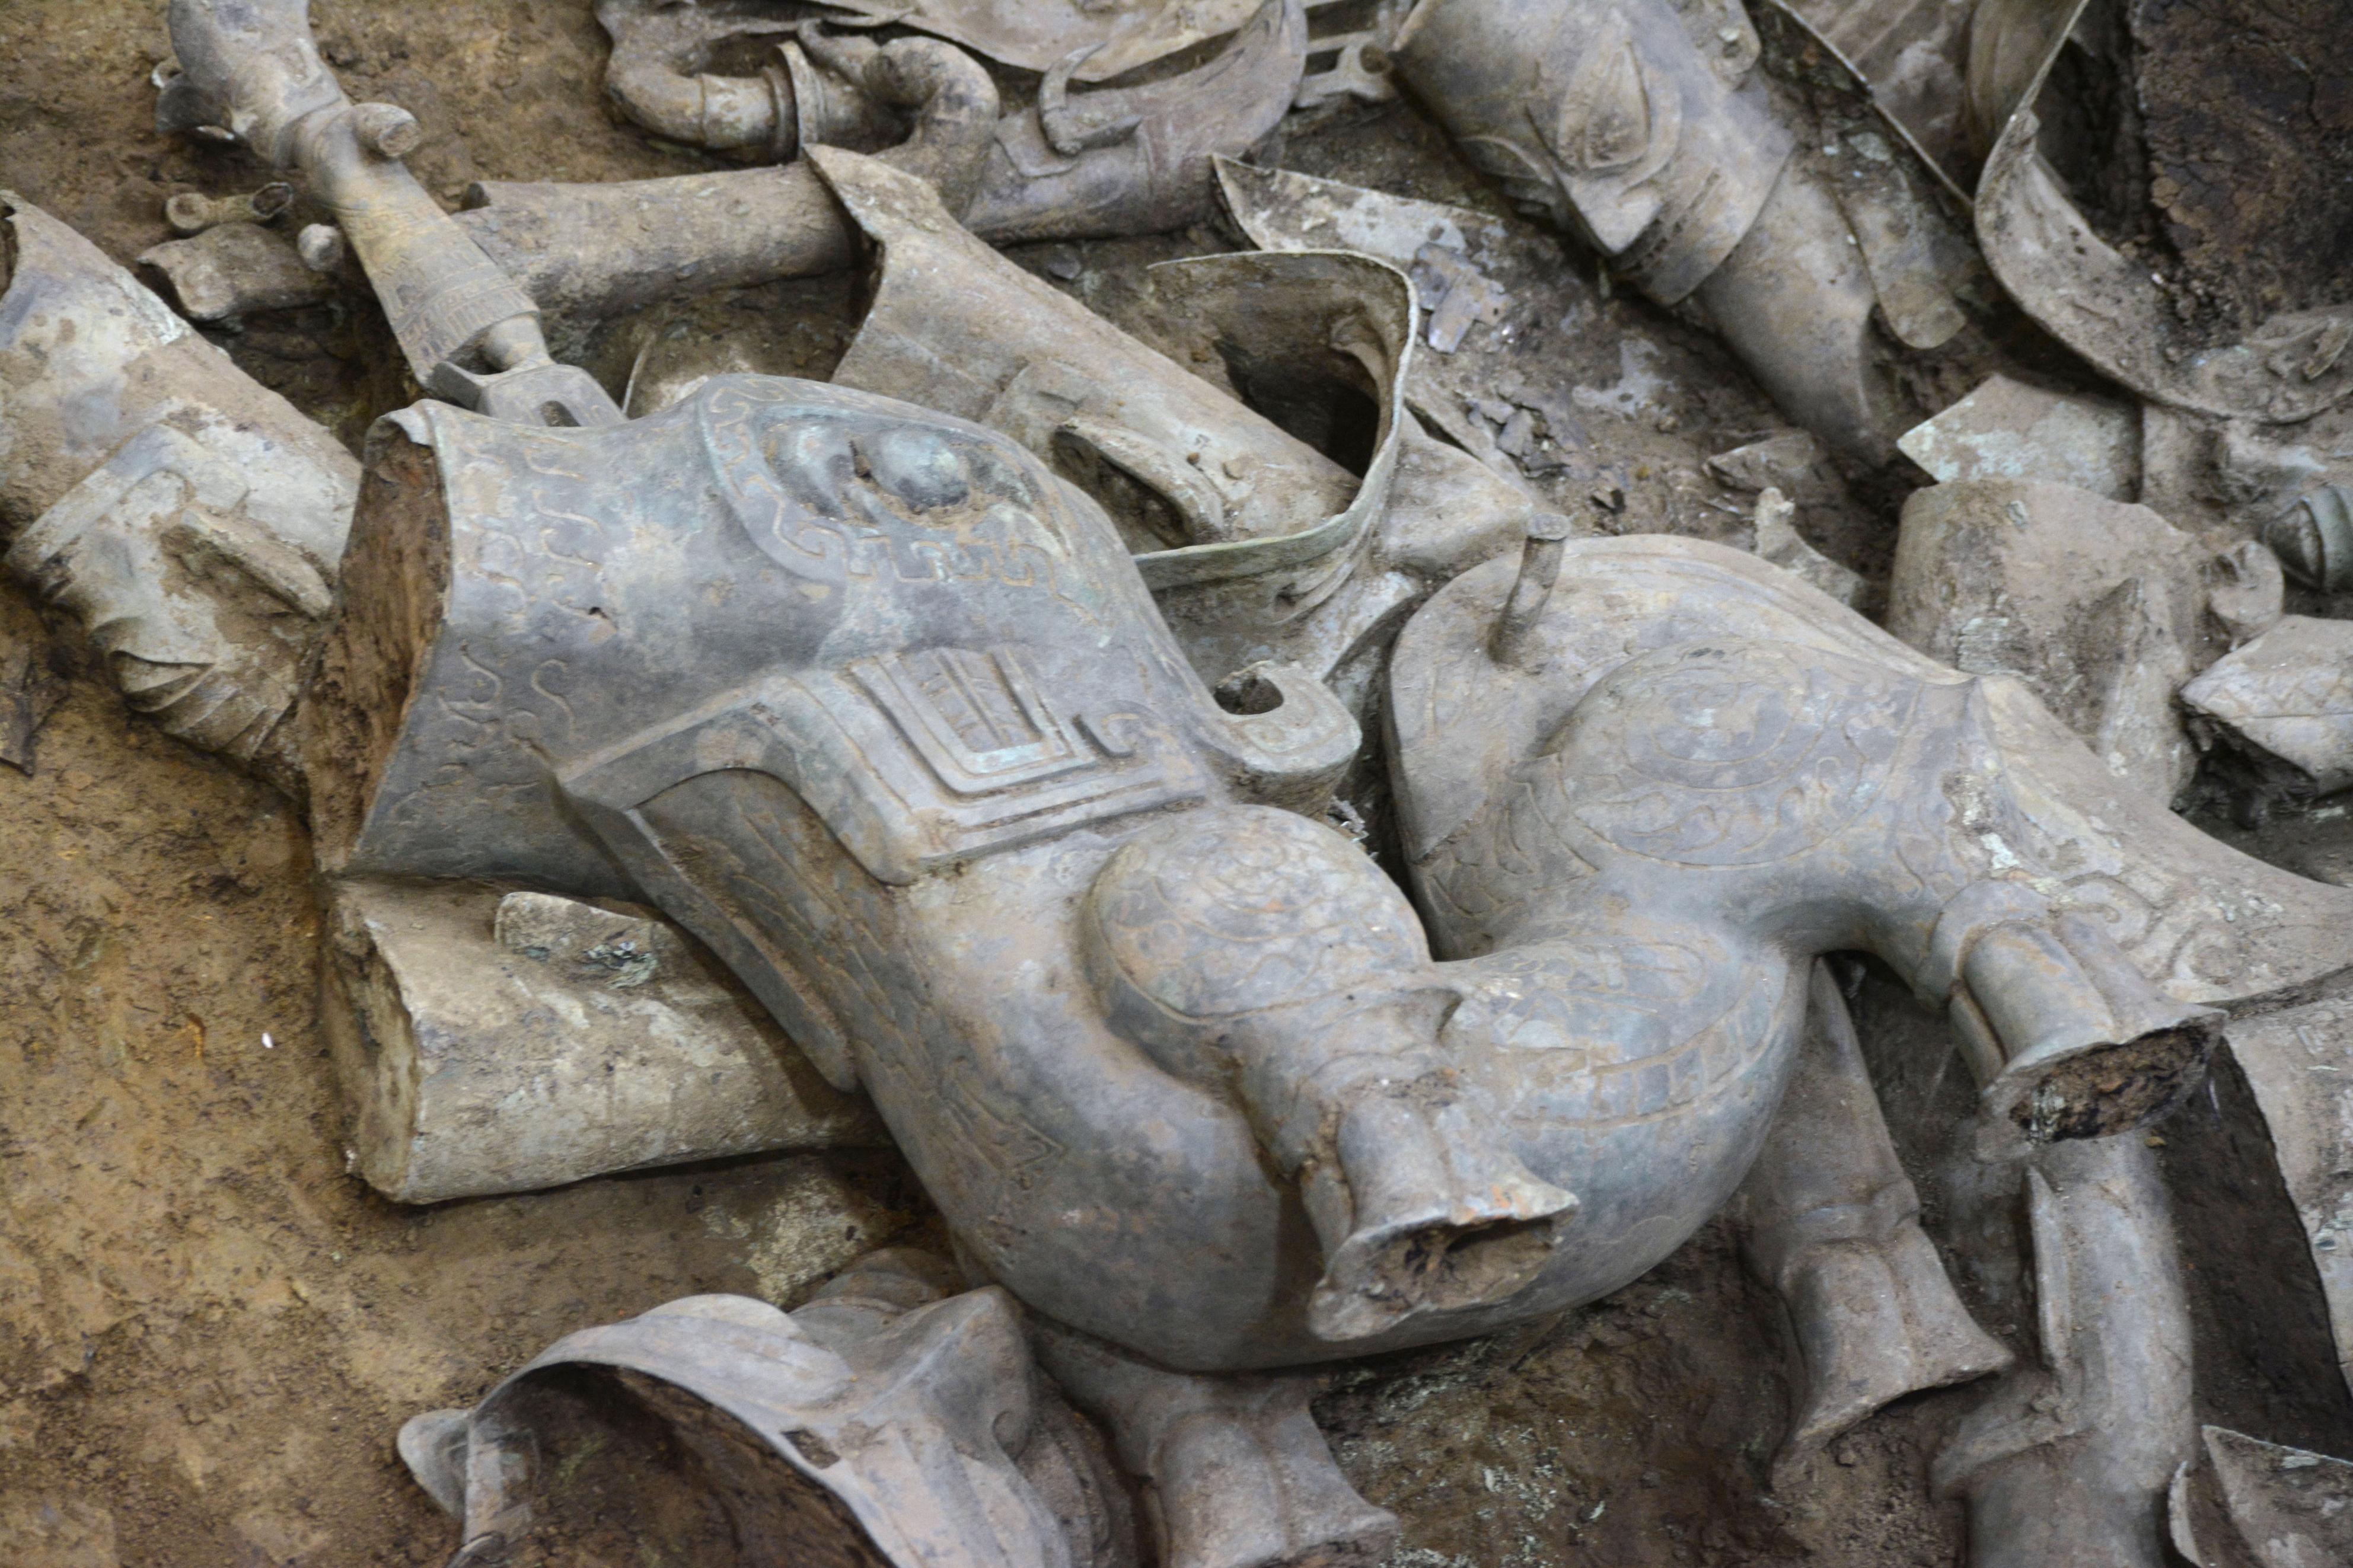 洗練された祭器続々出土 中国の古代遺跡「三星堆」 - 産経ニュース